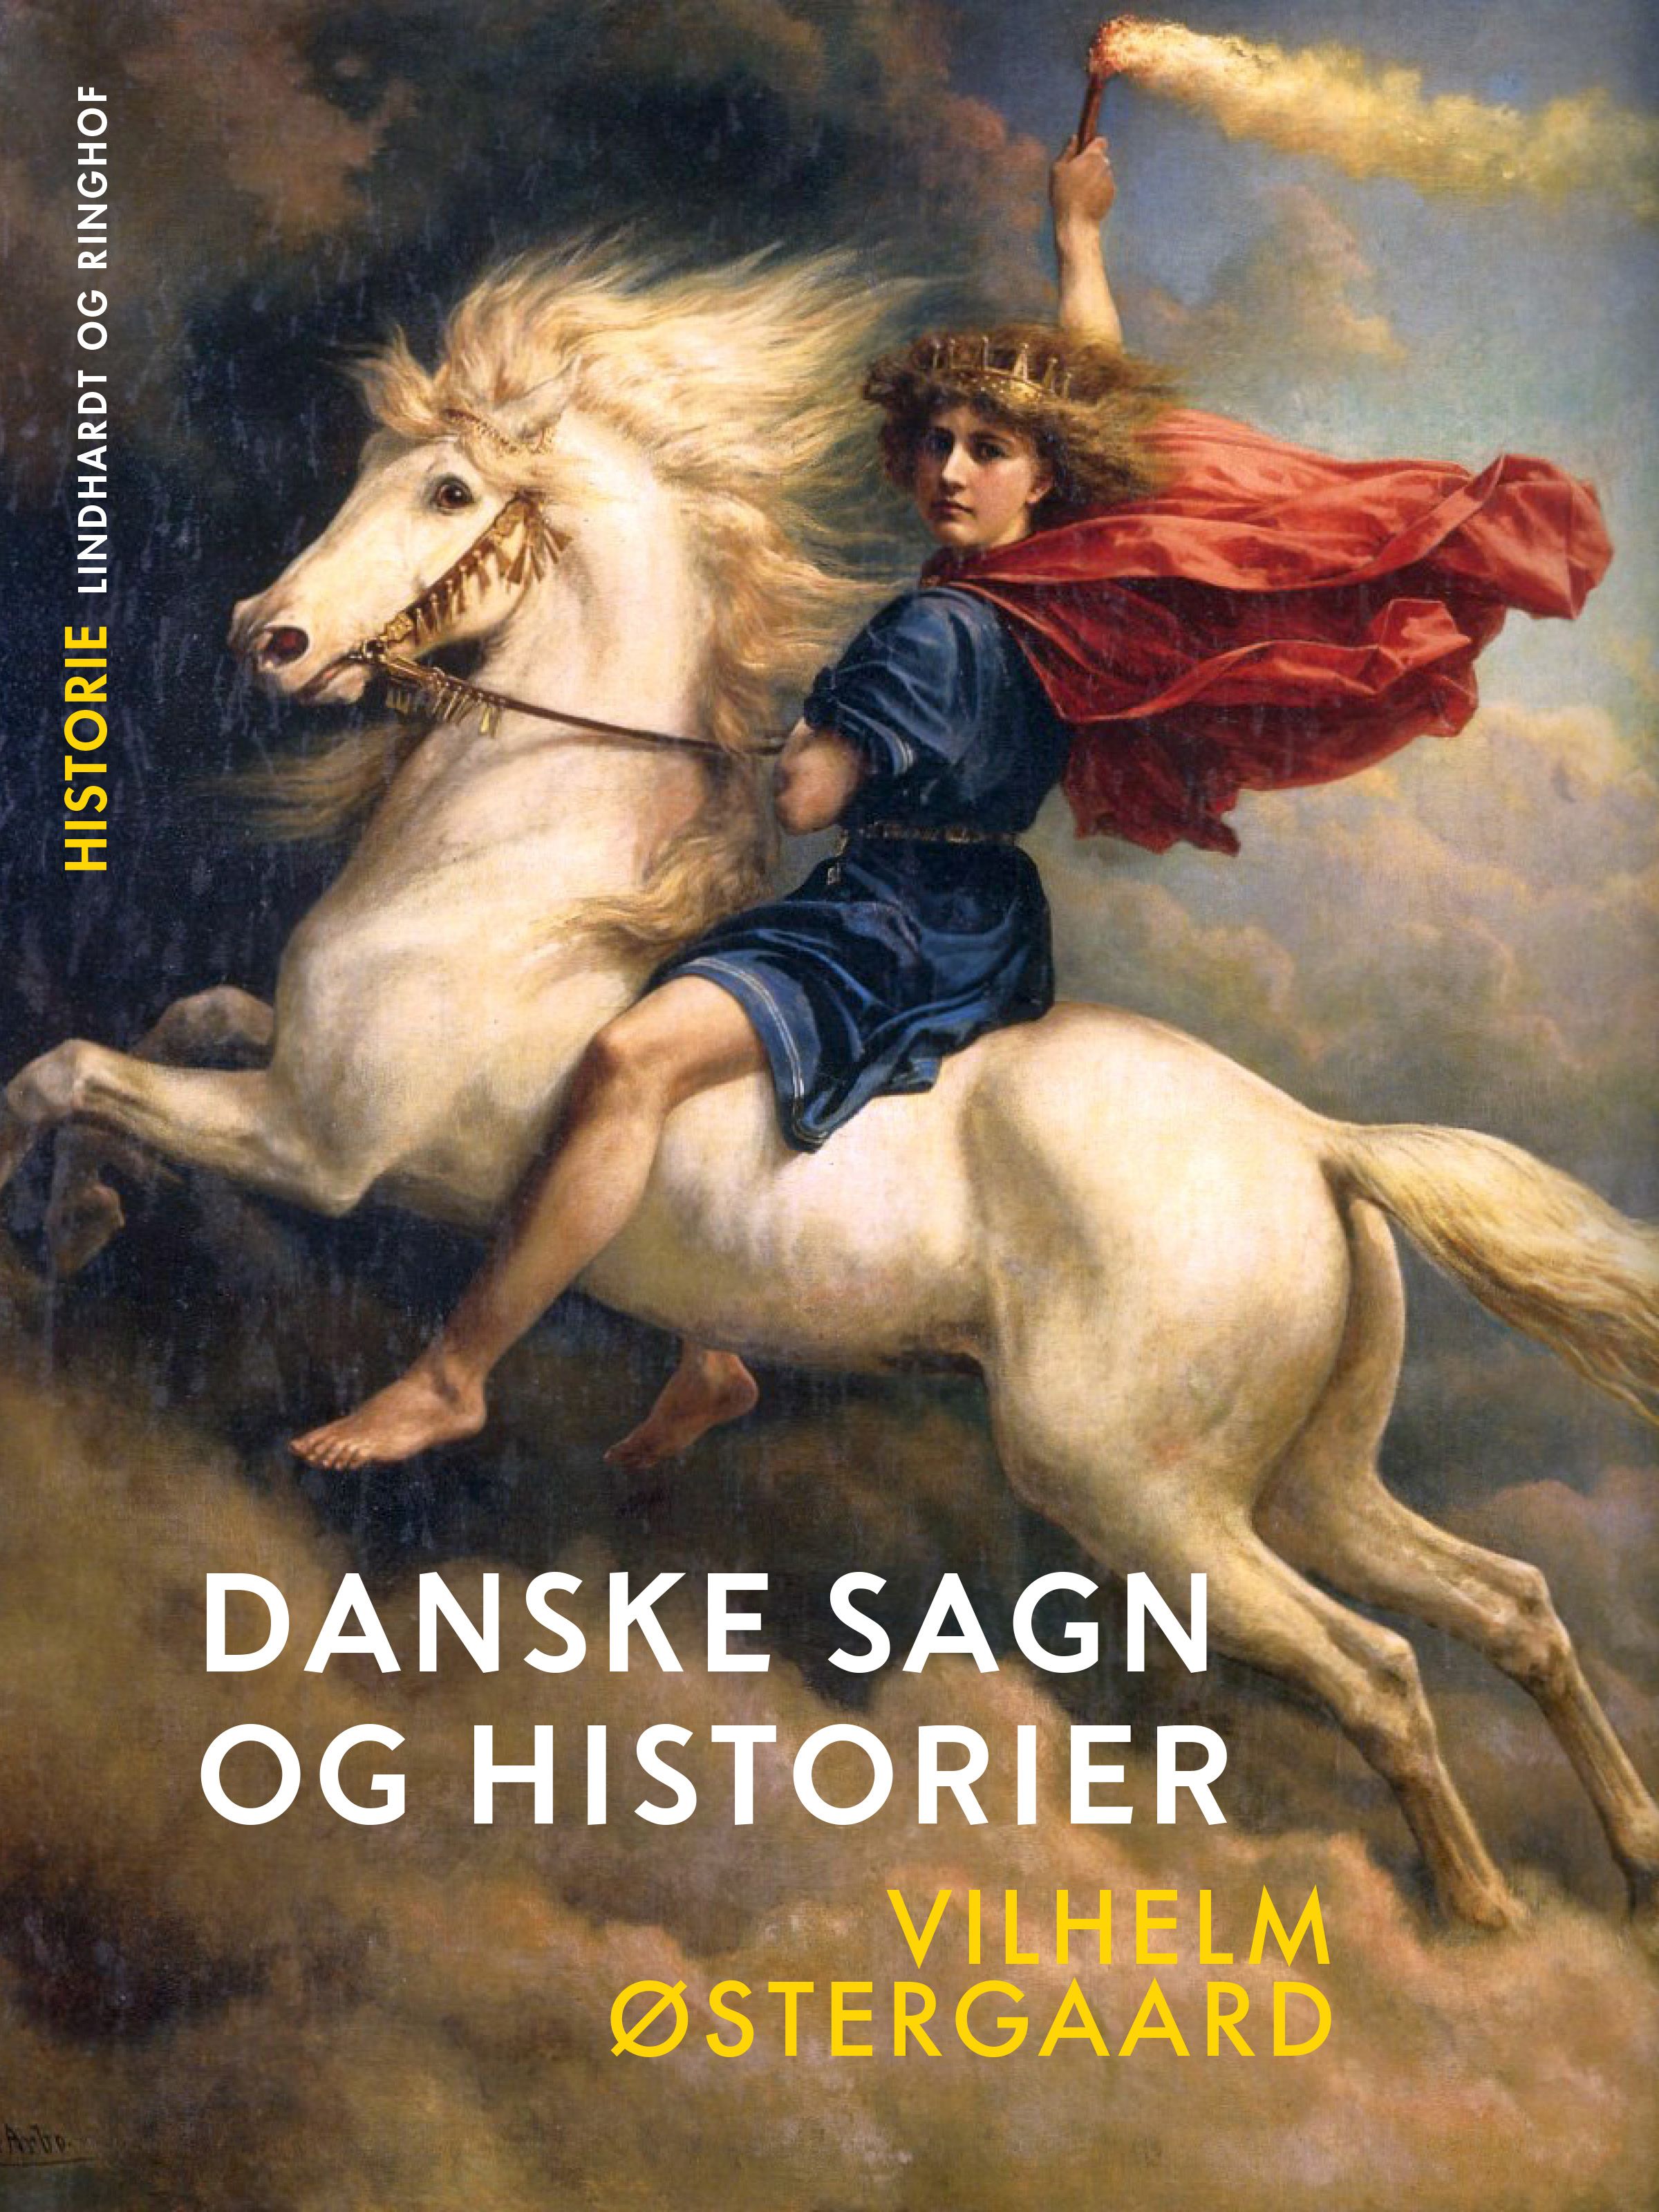 Danske sagn og historier, e-bog af Vilhelm Østergaard